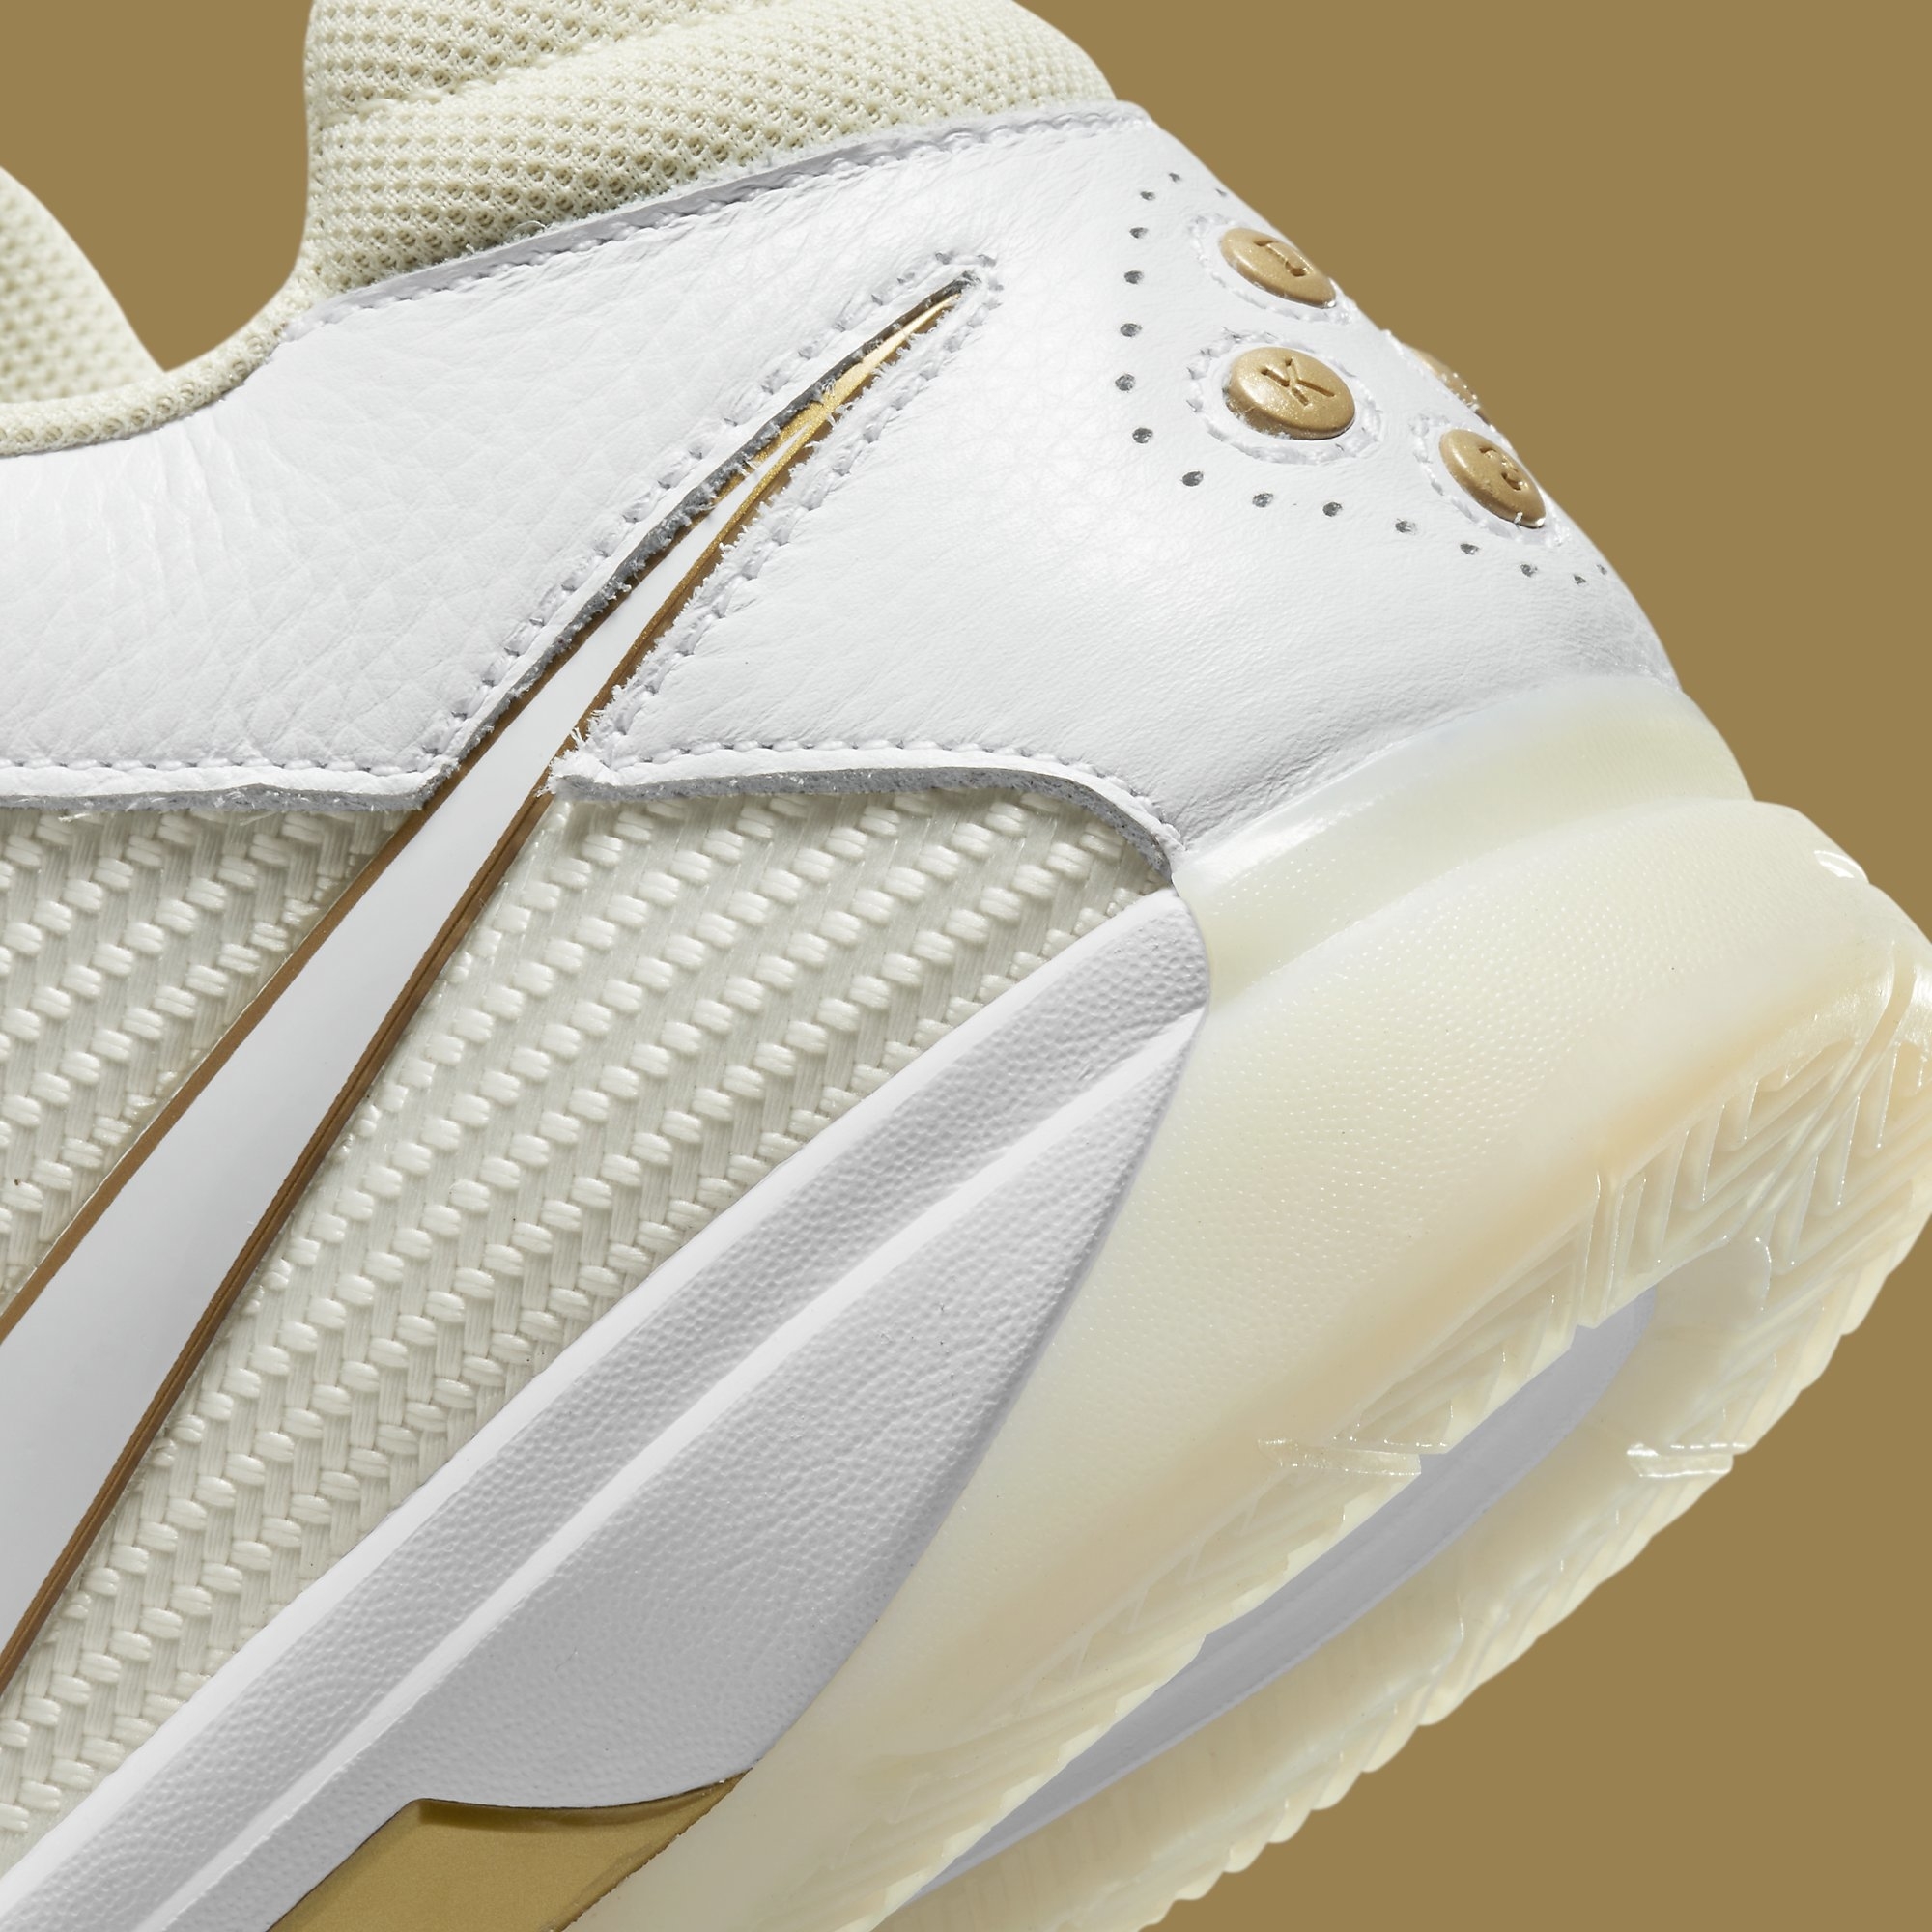 Nike KD 3 III White Gold Release Date DZ3009-100 Heel Detail